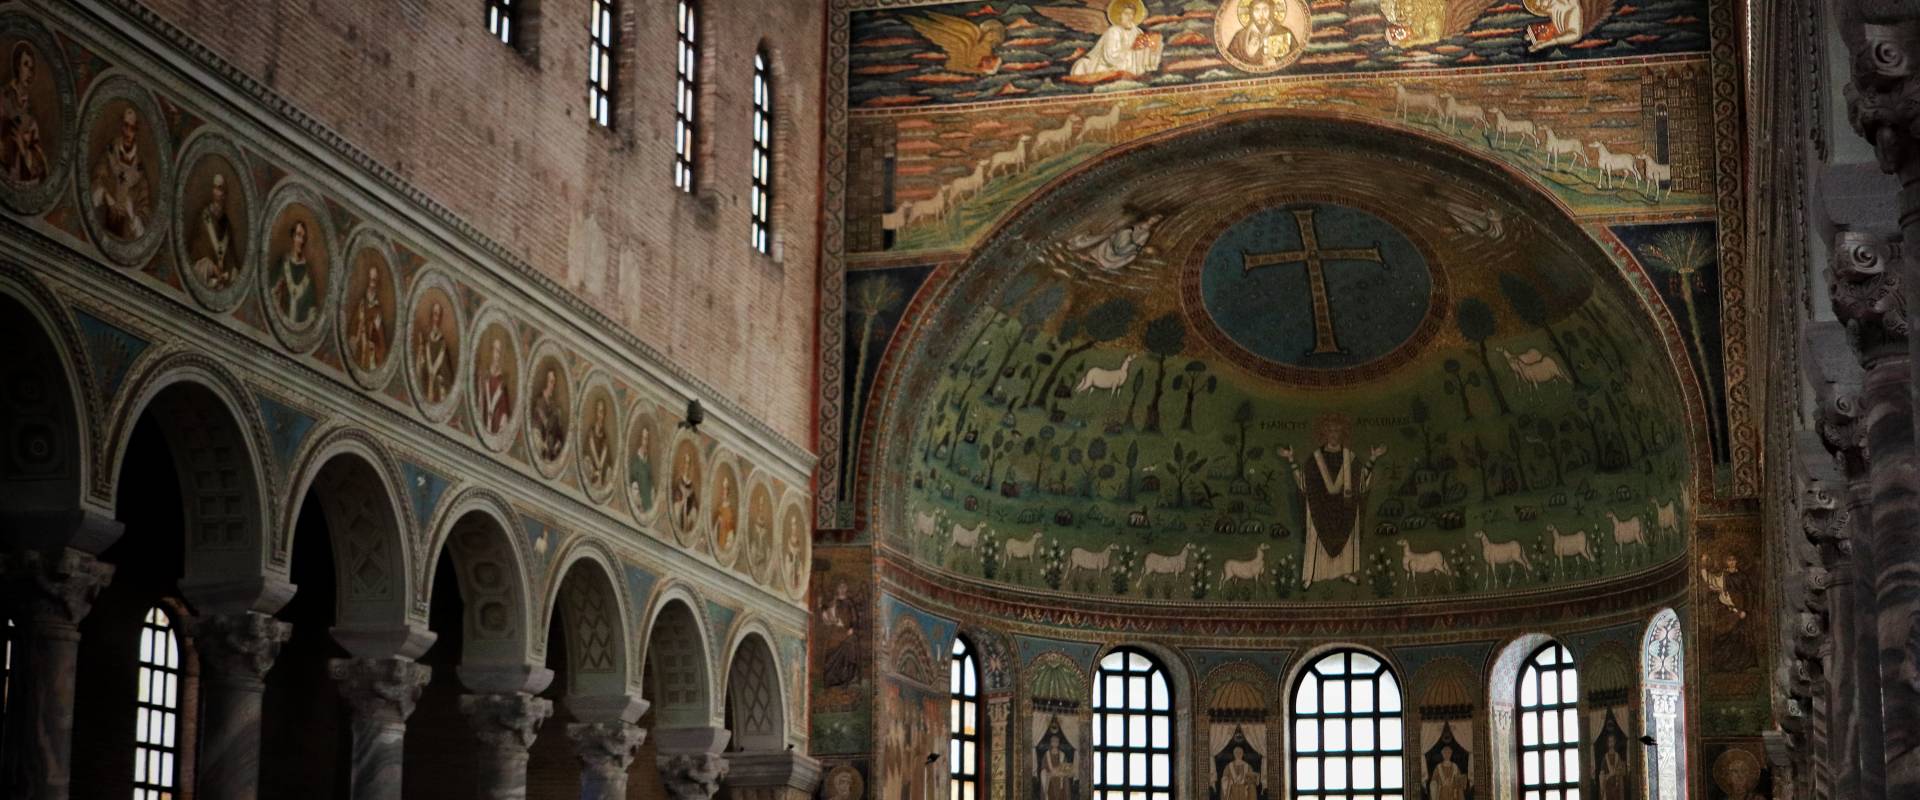 Basilica di Sant'Apollinare in Classe, Ravenna (interno) foto di Stefano Casano